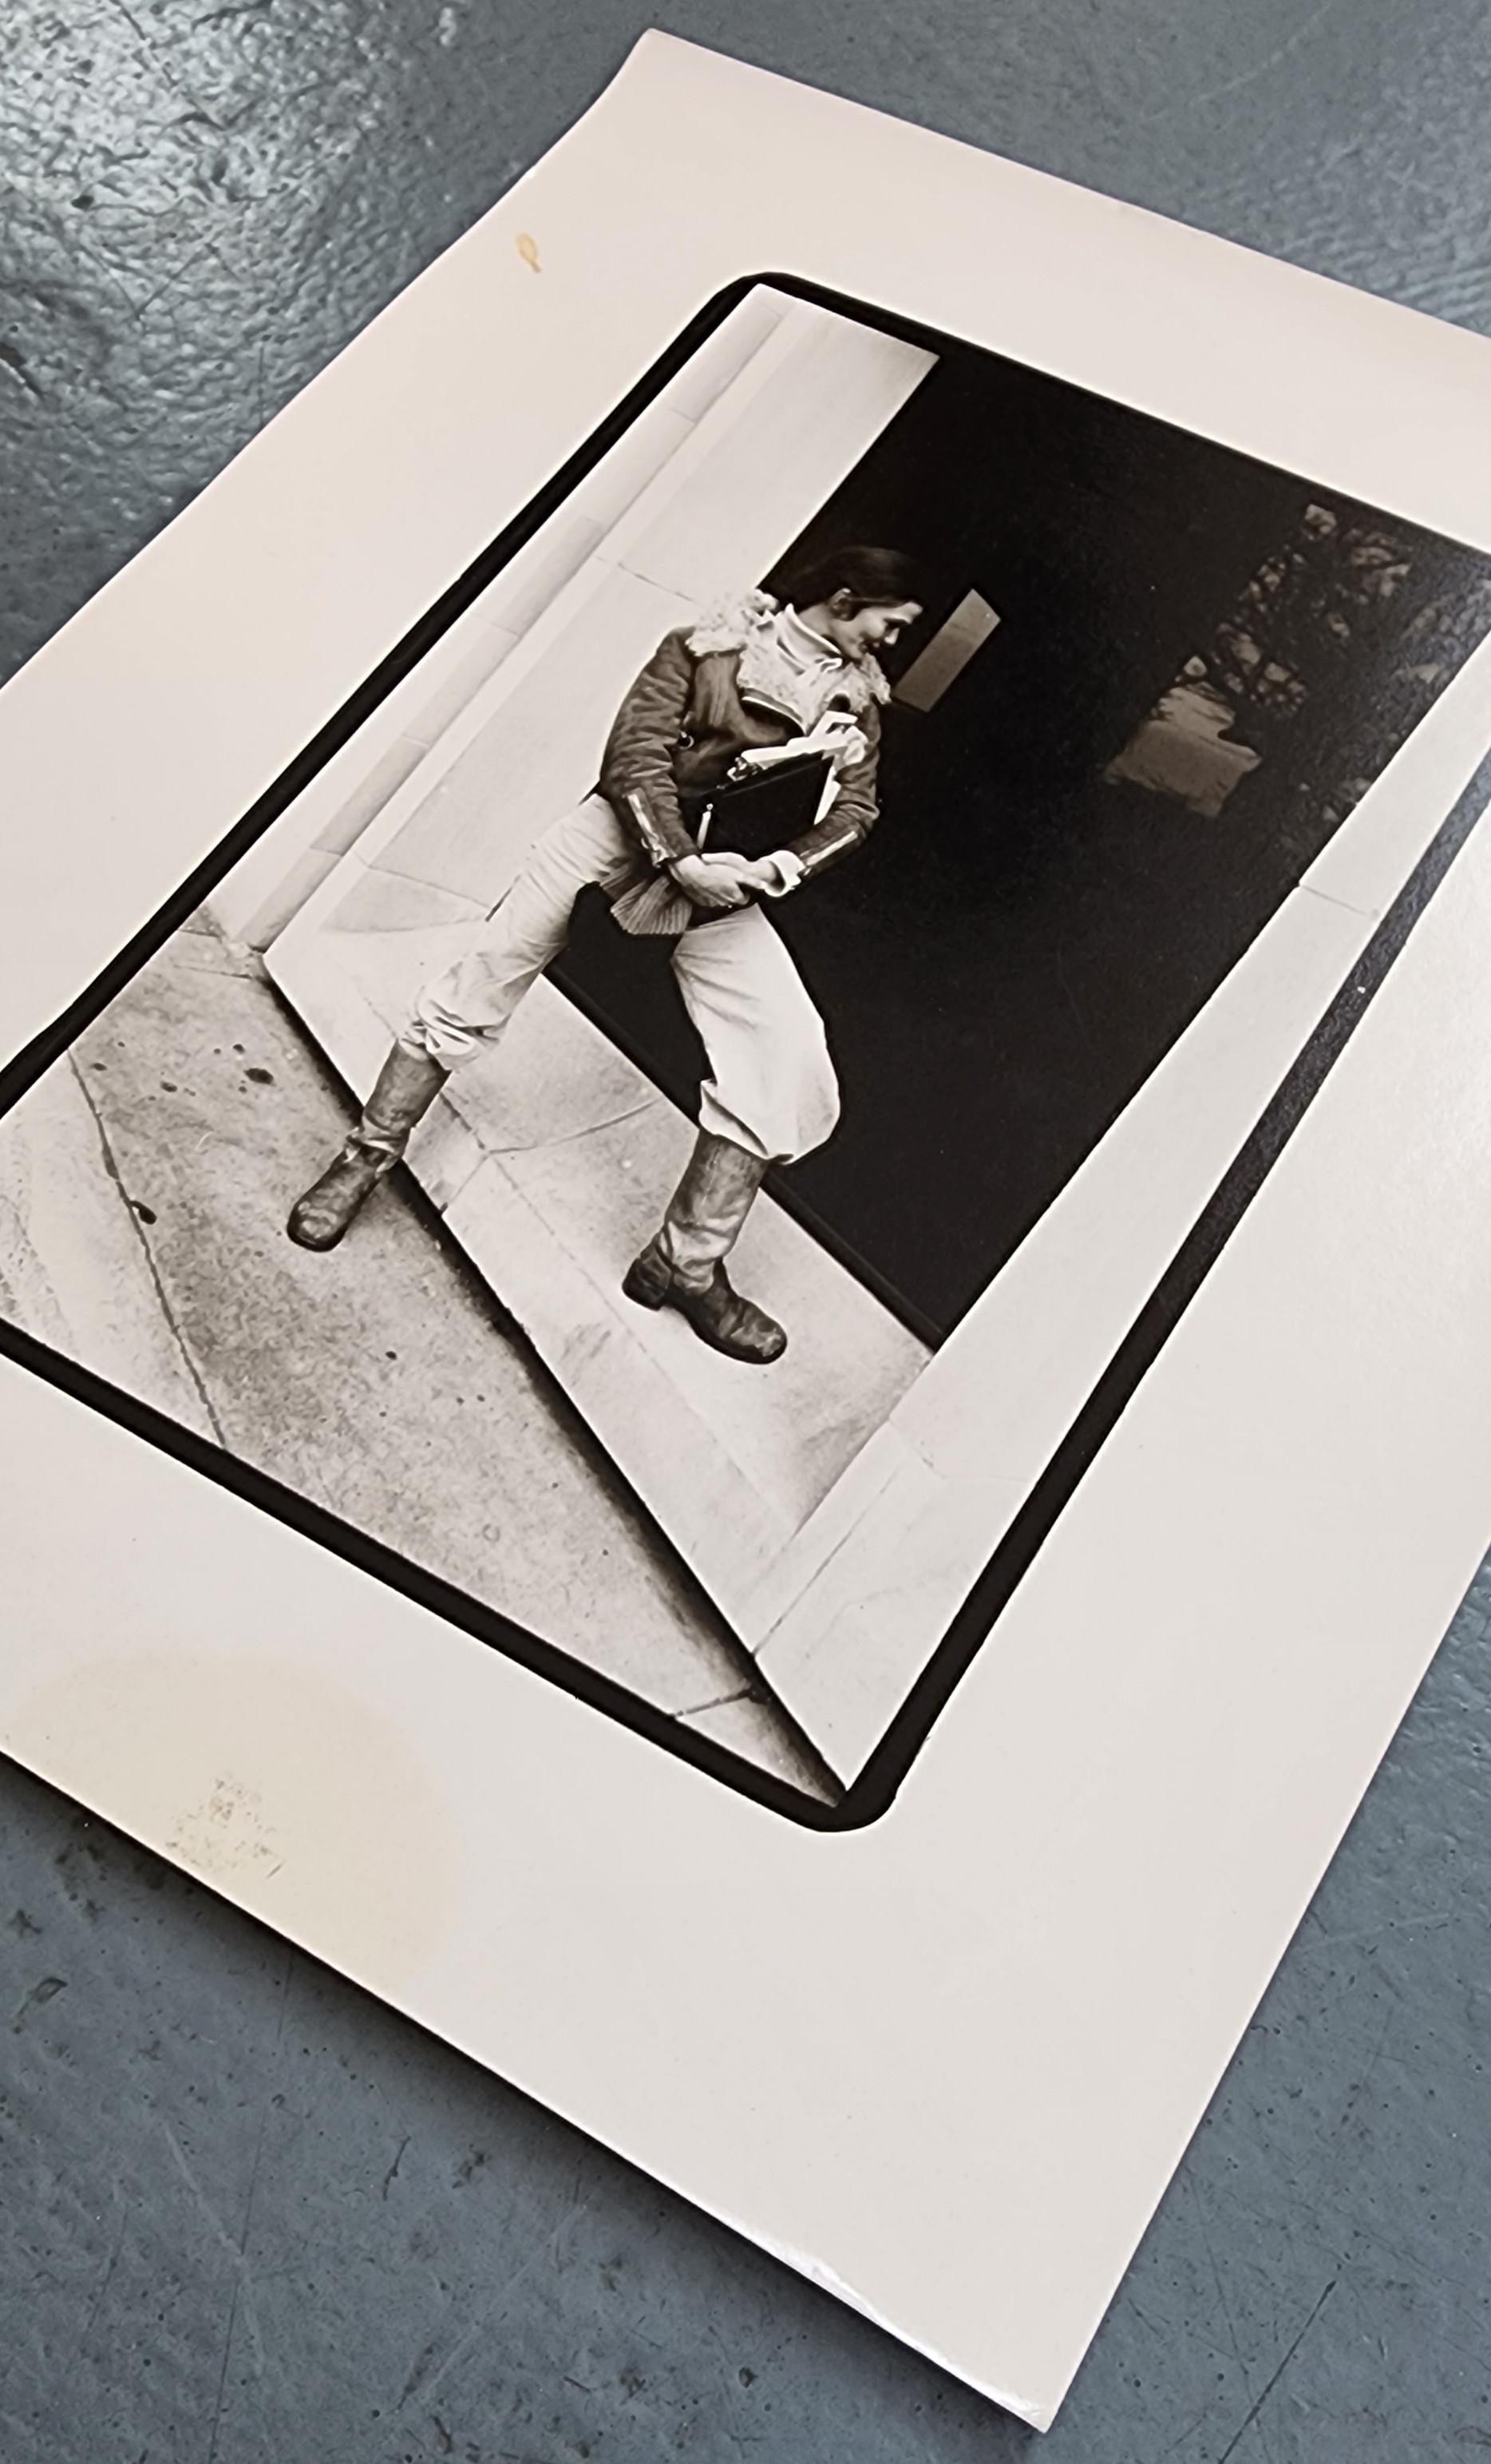 Joe Kelly
Portrait sans titre II
Photographie en noir et blanc
Année : vers la fin des années 70 
Taille de l'image : 7x5.5in
Taille de la feuille : 10x8in
Non signé
Réf. : 924802-1711
* Légère salissure en haut à gauche. Image intacte - aucun